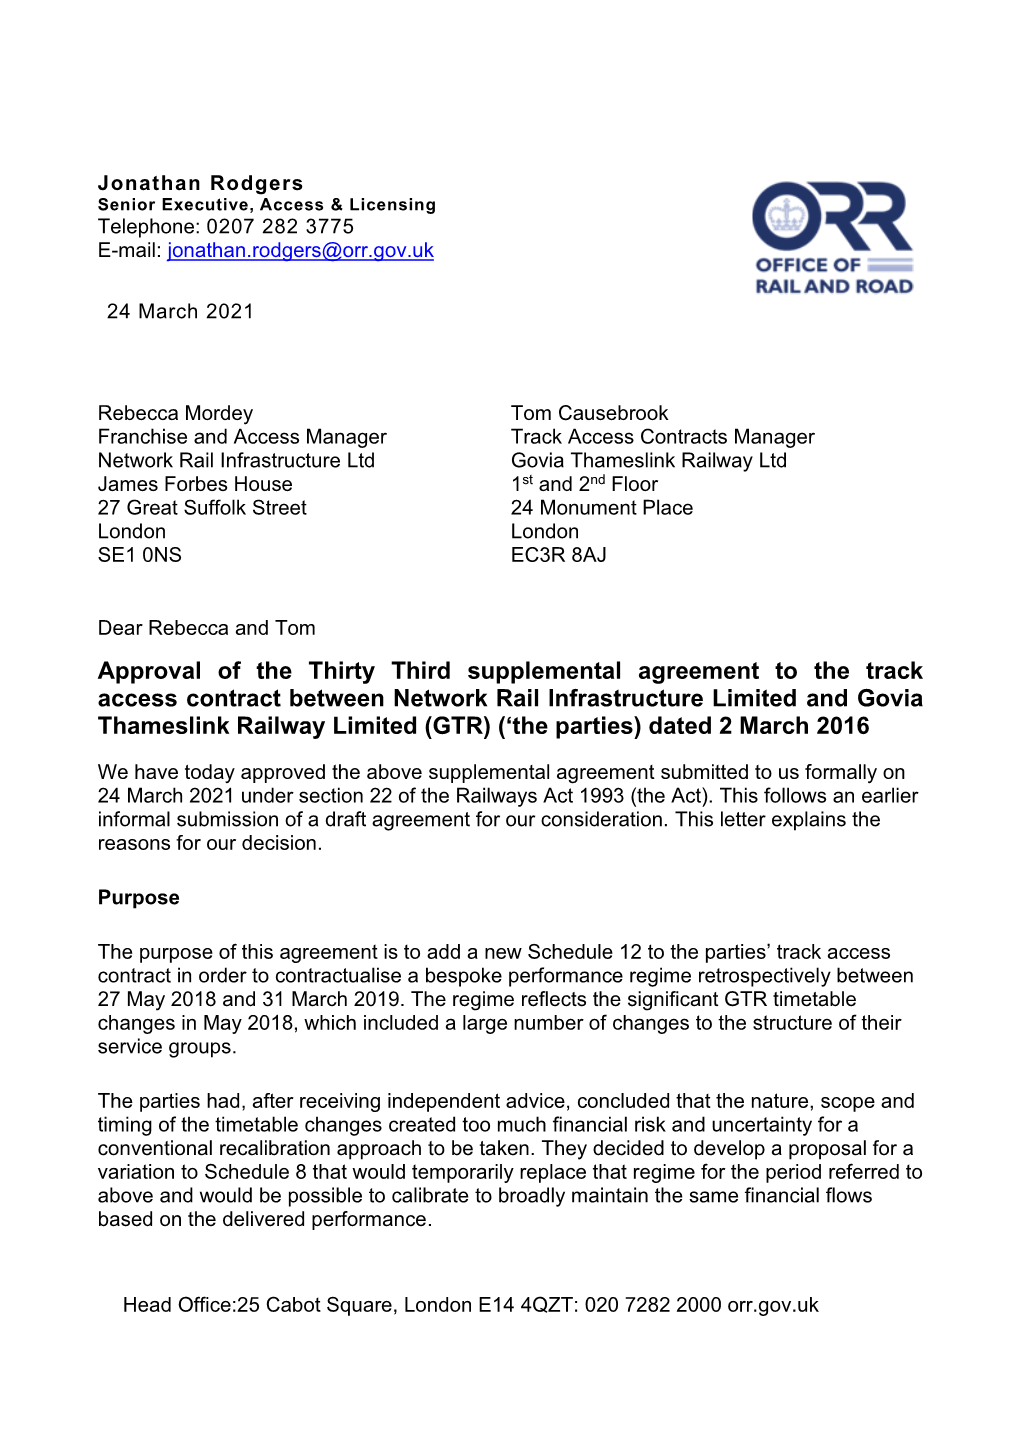 Govia Thameslink Railway Limited 33Rd SA- Decision Letter